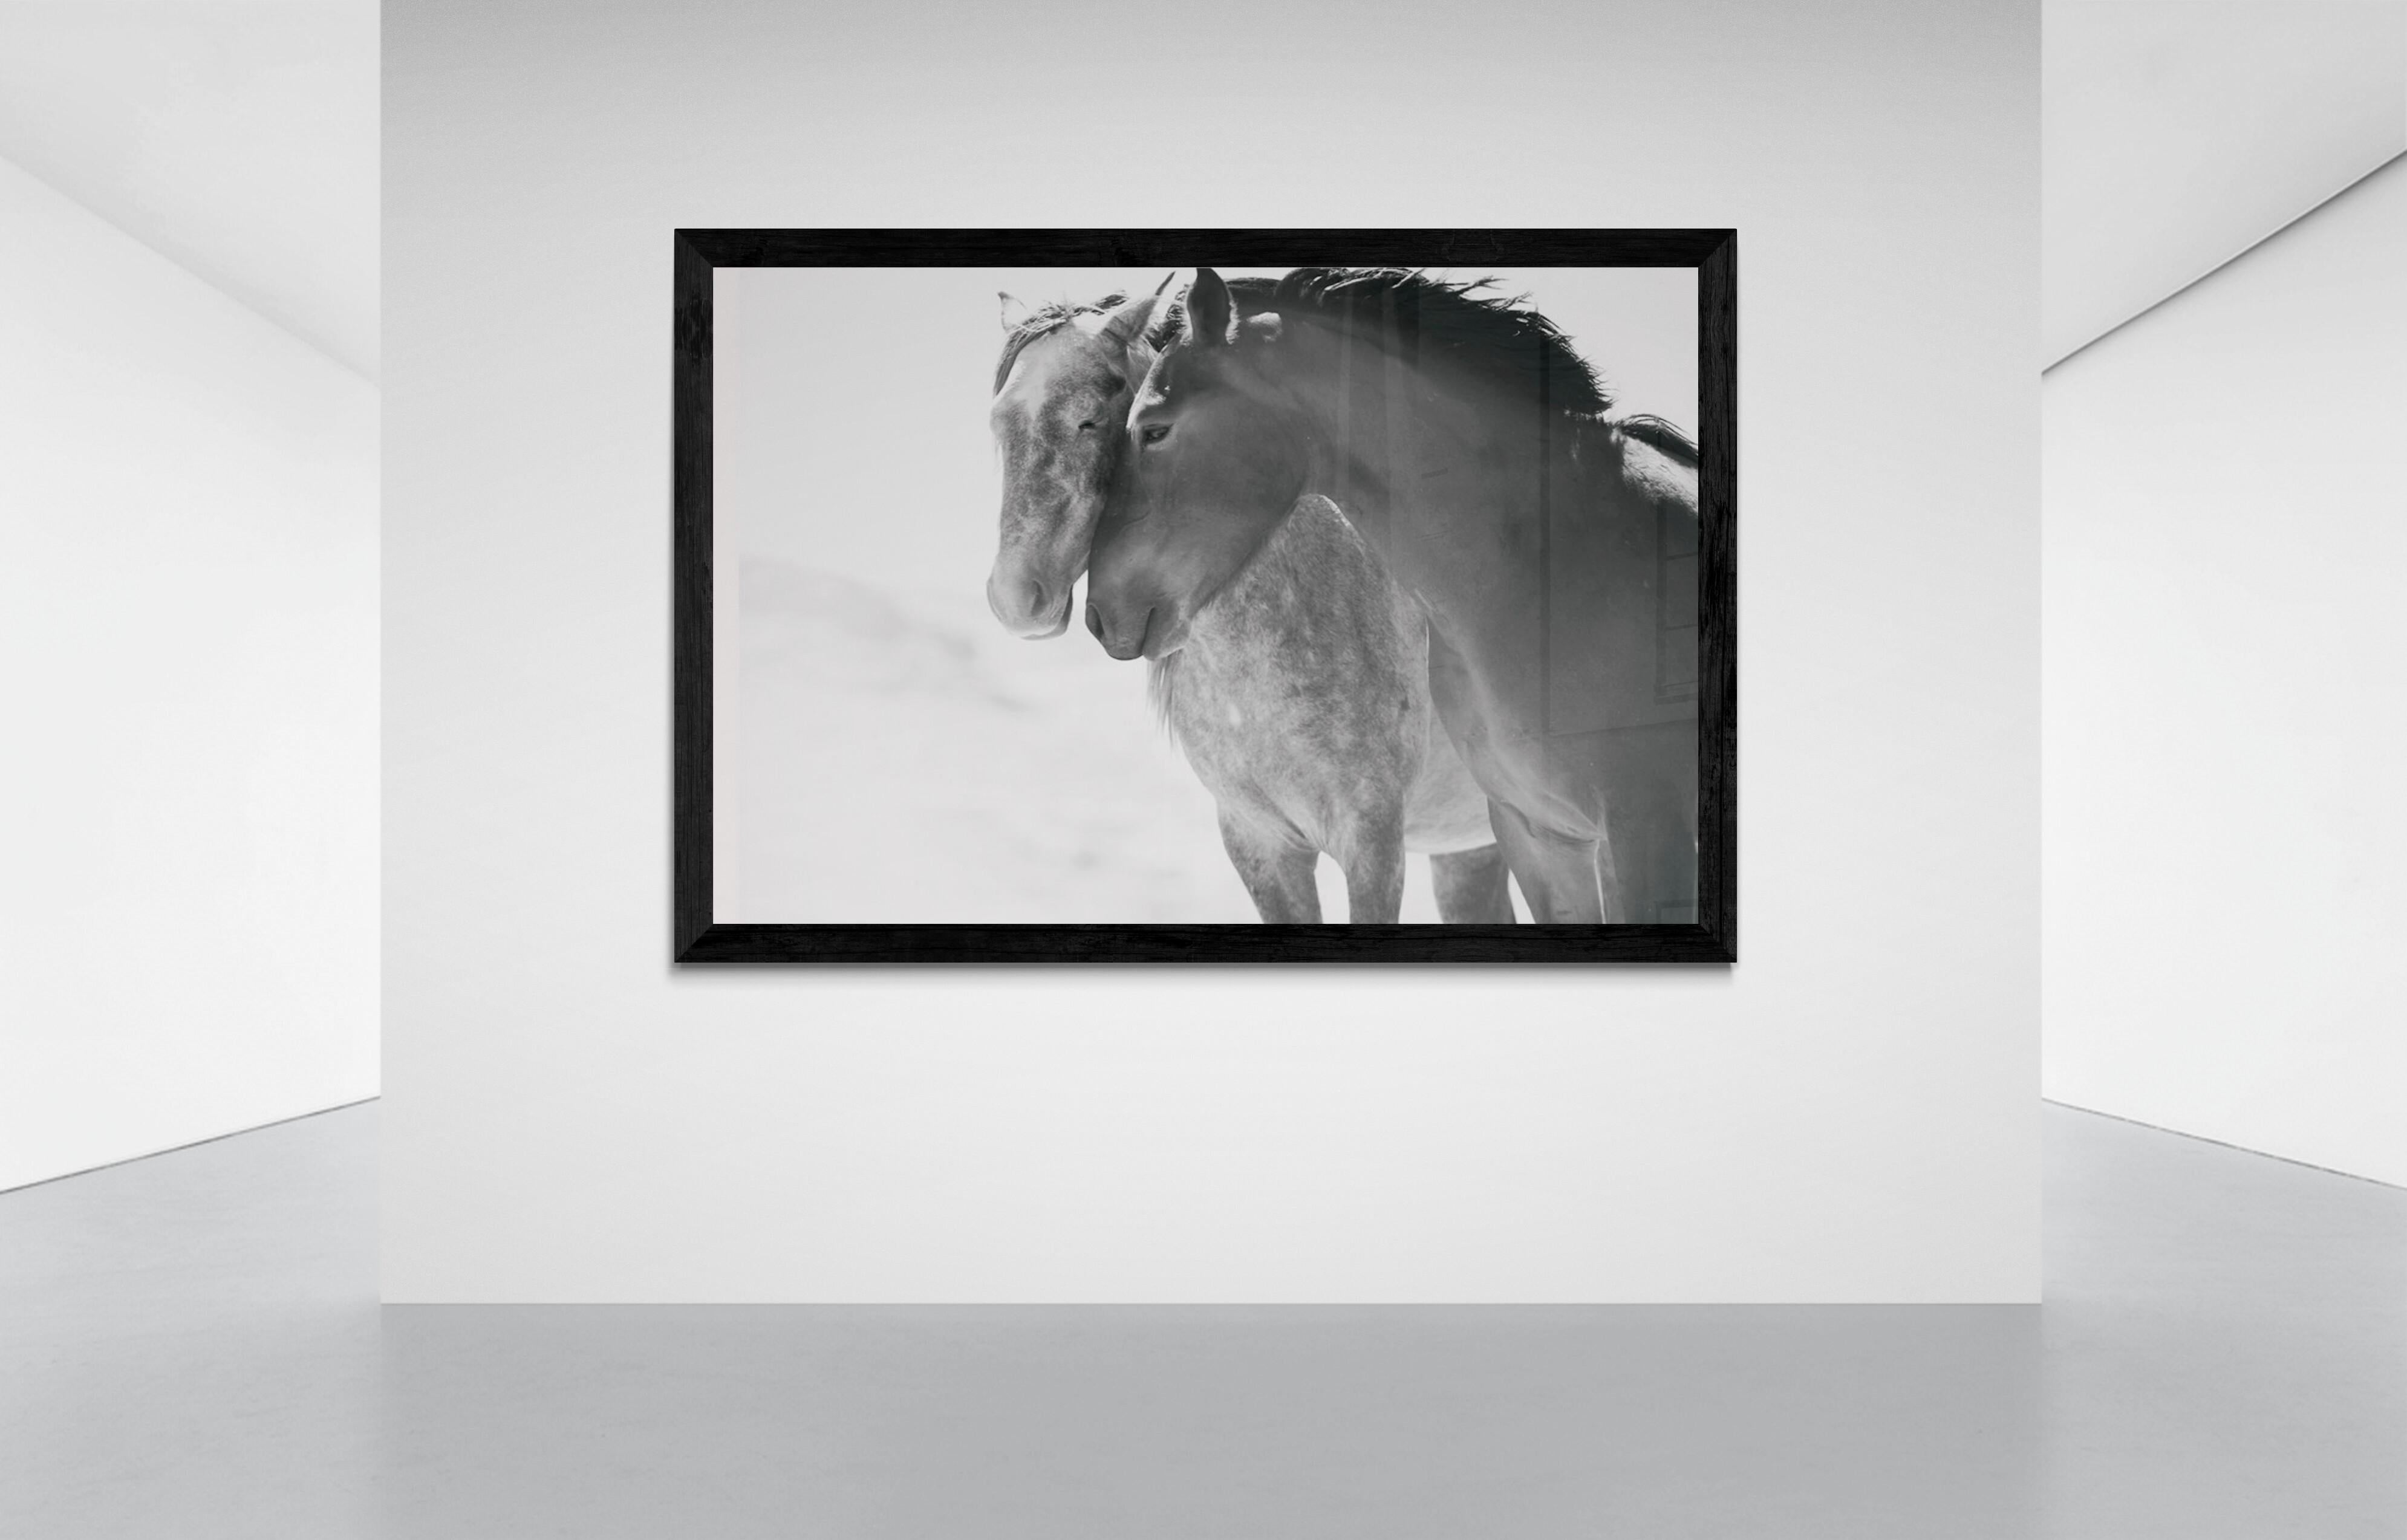 Seelenverwandte 60x90  Schwarz-Weiß-Fotografie von Wildpferden und Senffotografie  – Photograph von Shane Russeck